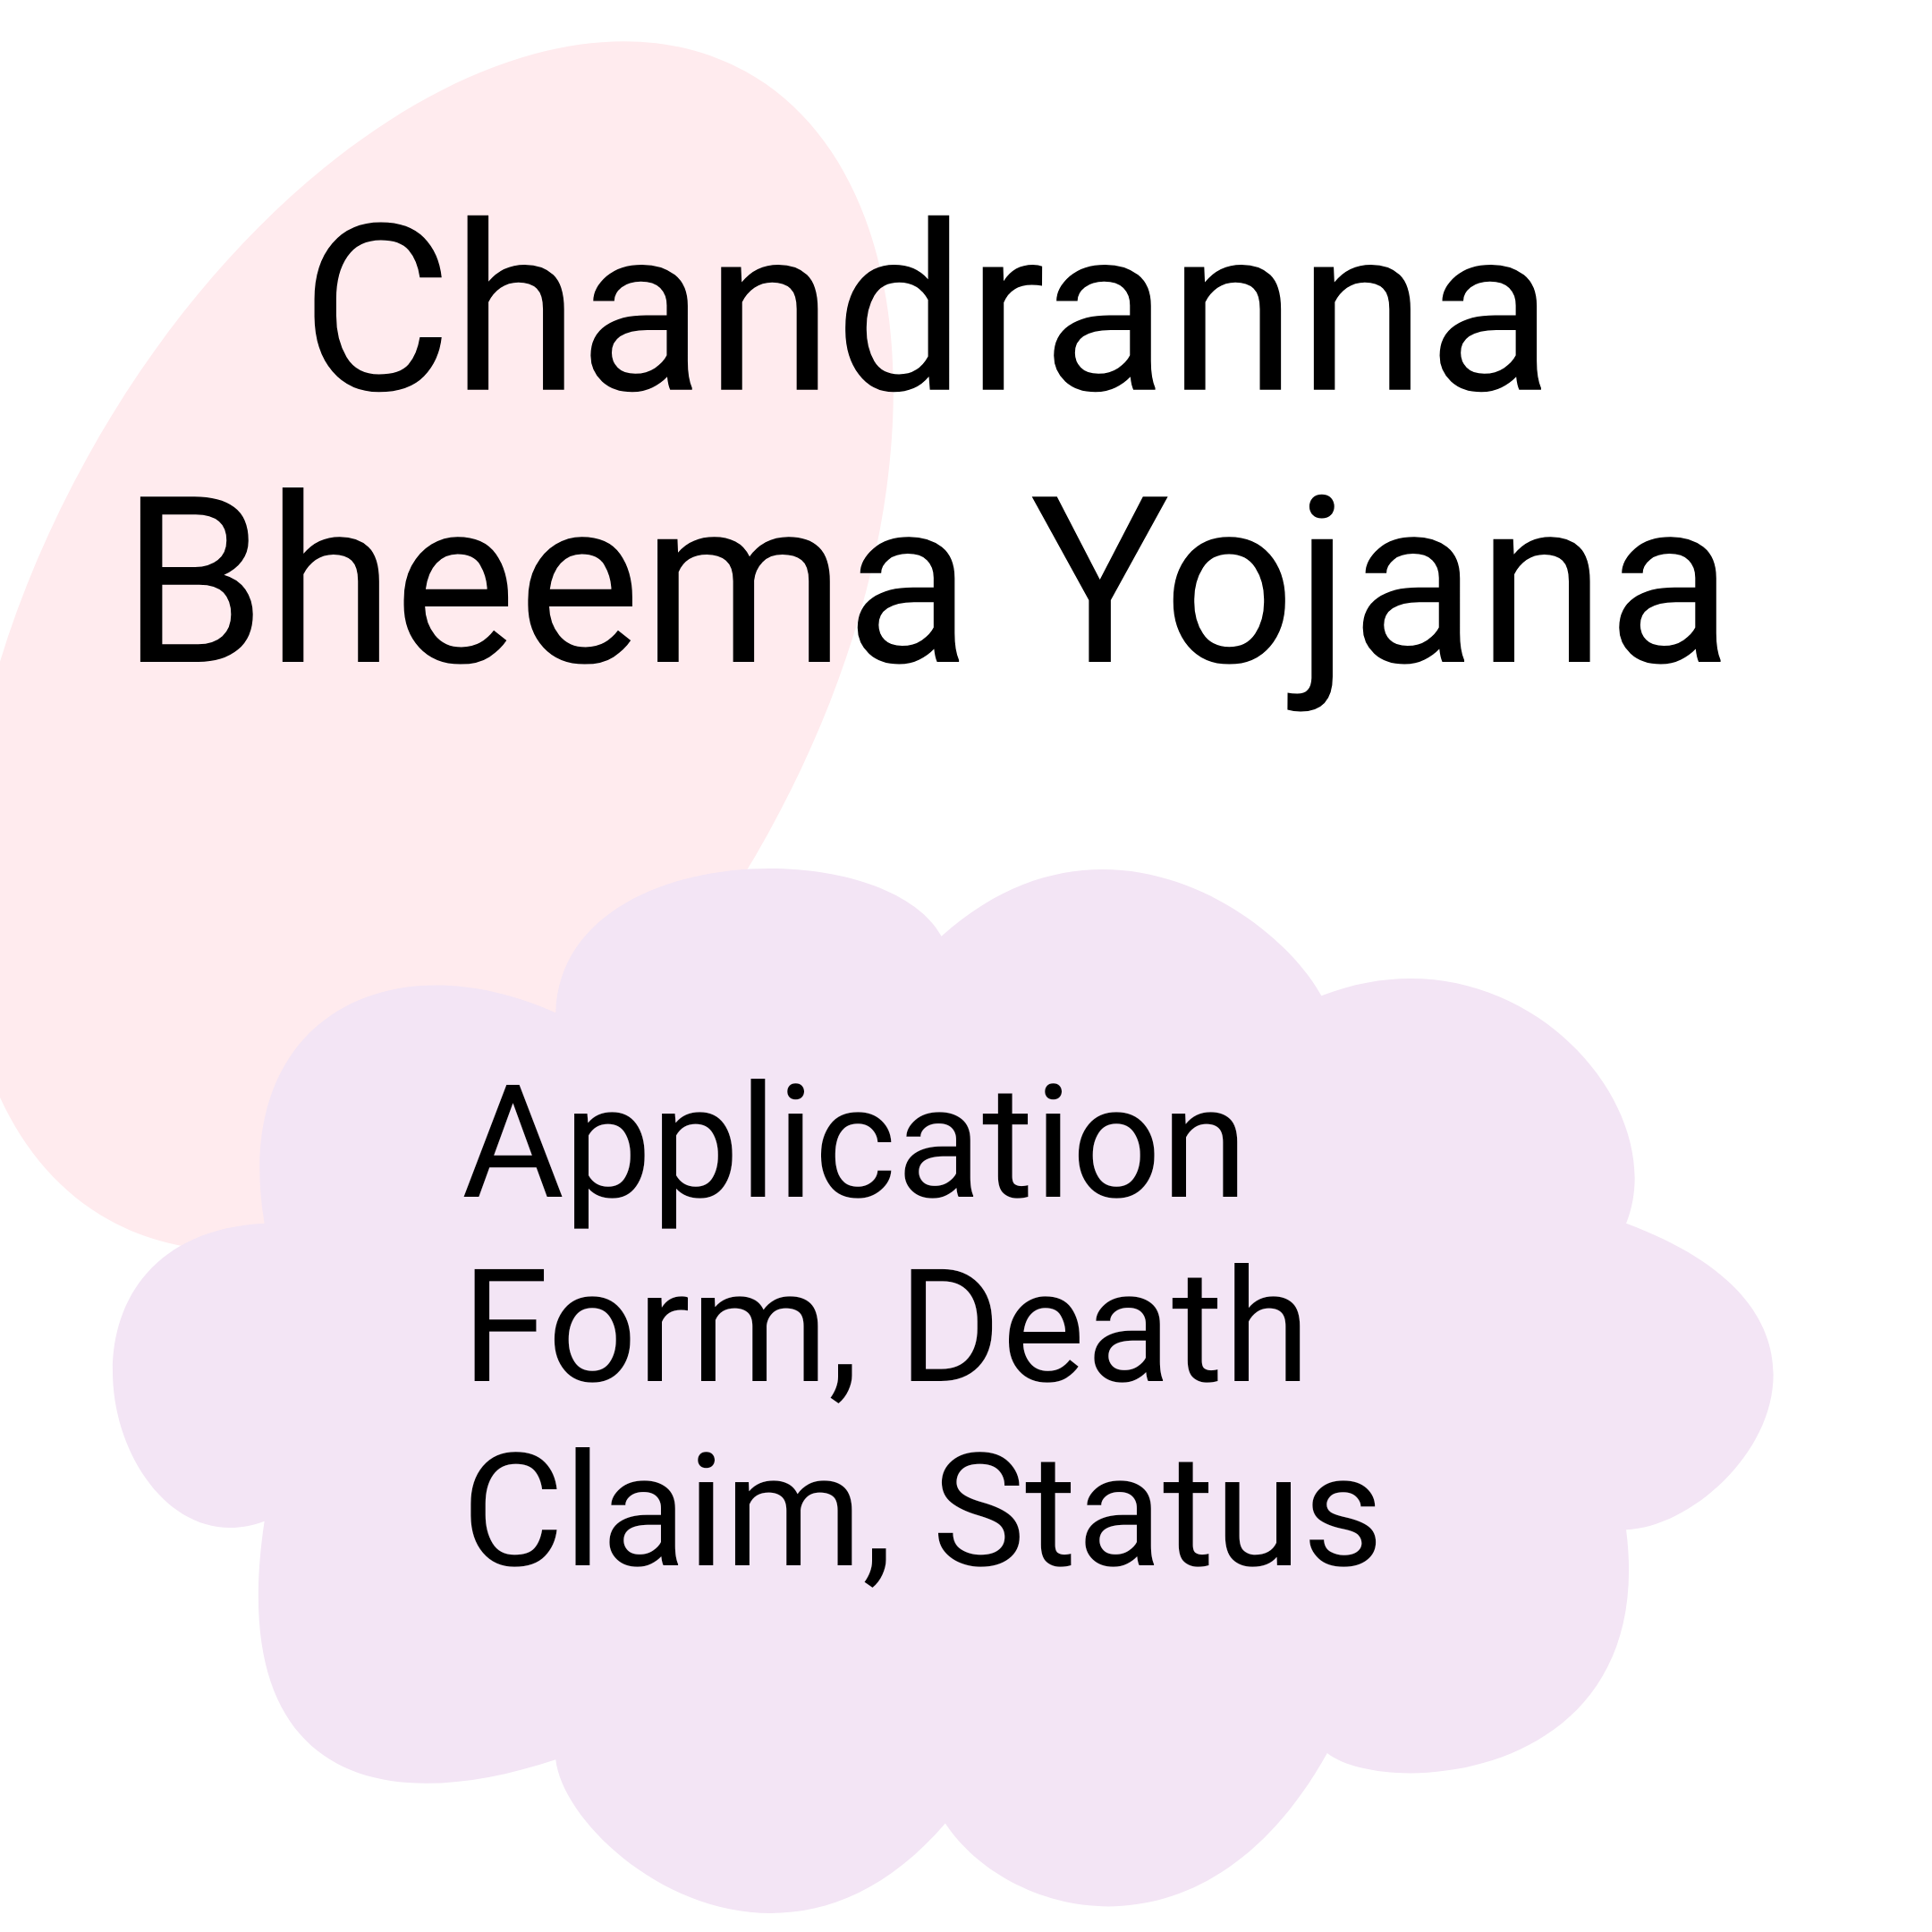 Chandranna Bheema Yojana